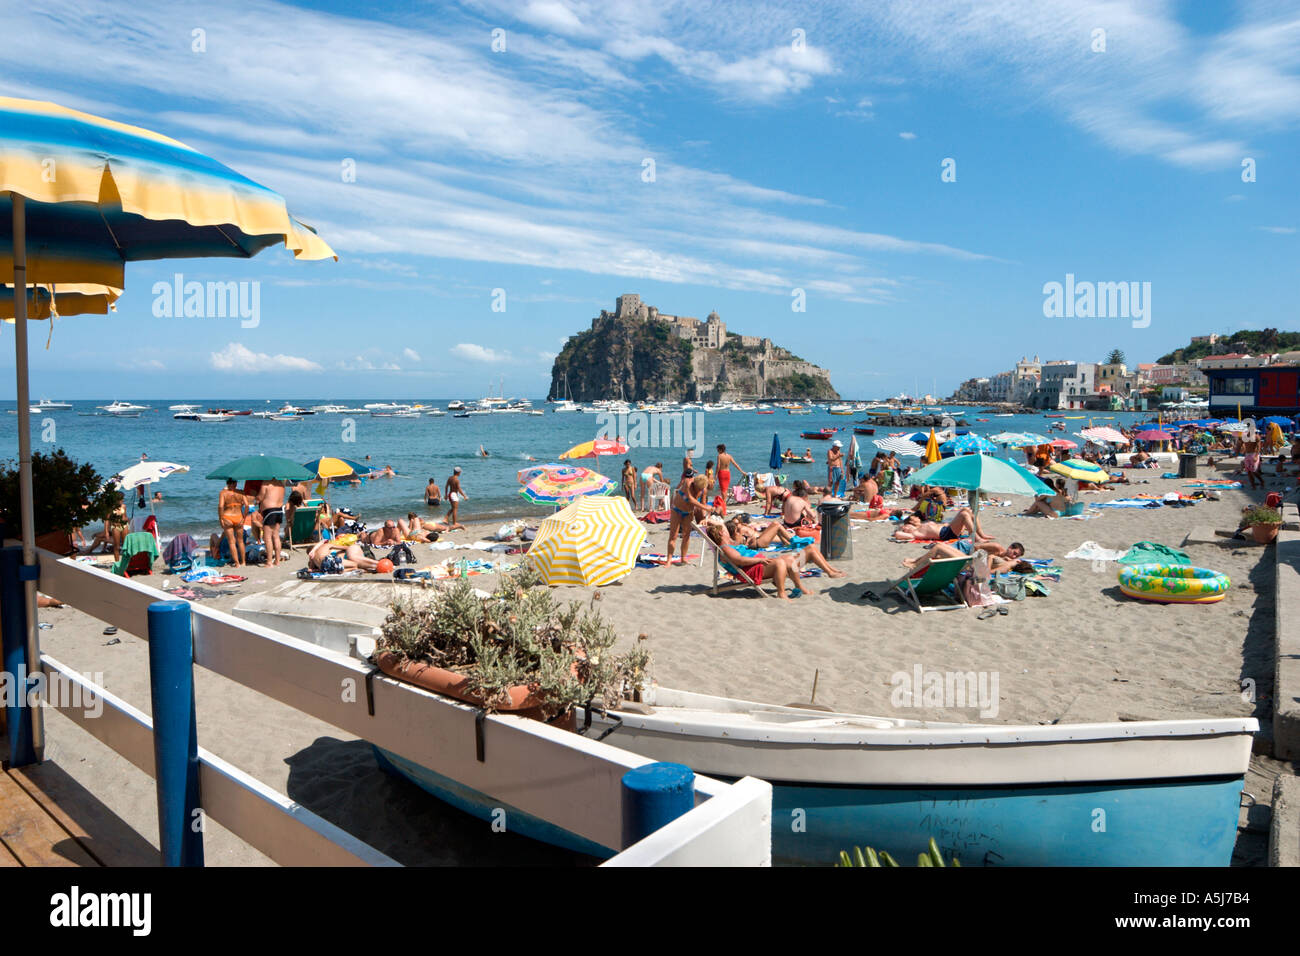 La plage à Ischia Ponte avec le Château Aragonais derrière, Ischia, Italie Banque D'Images